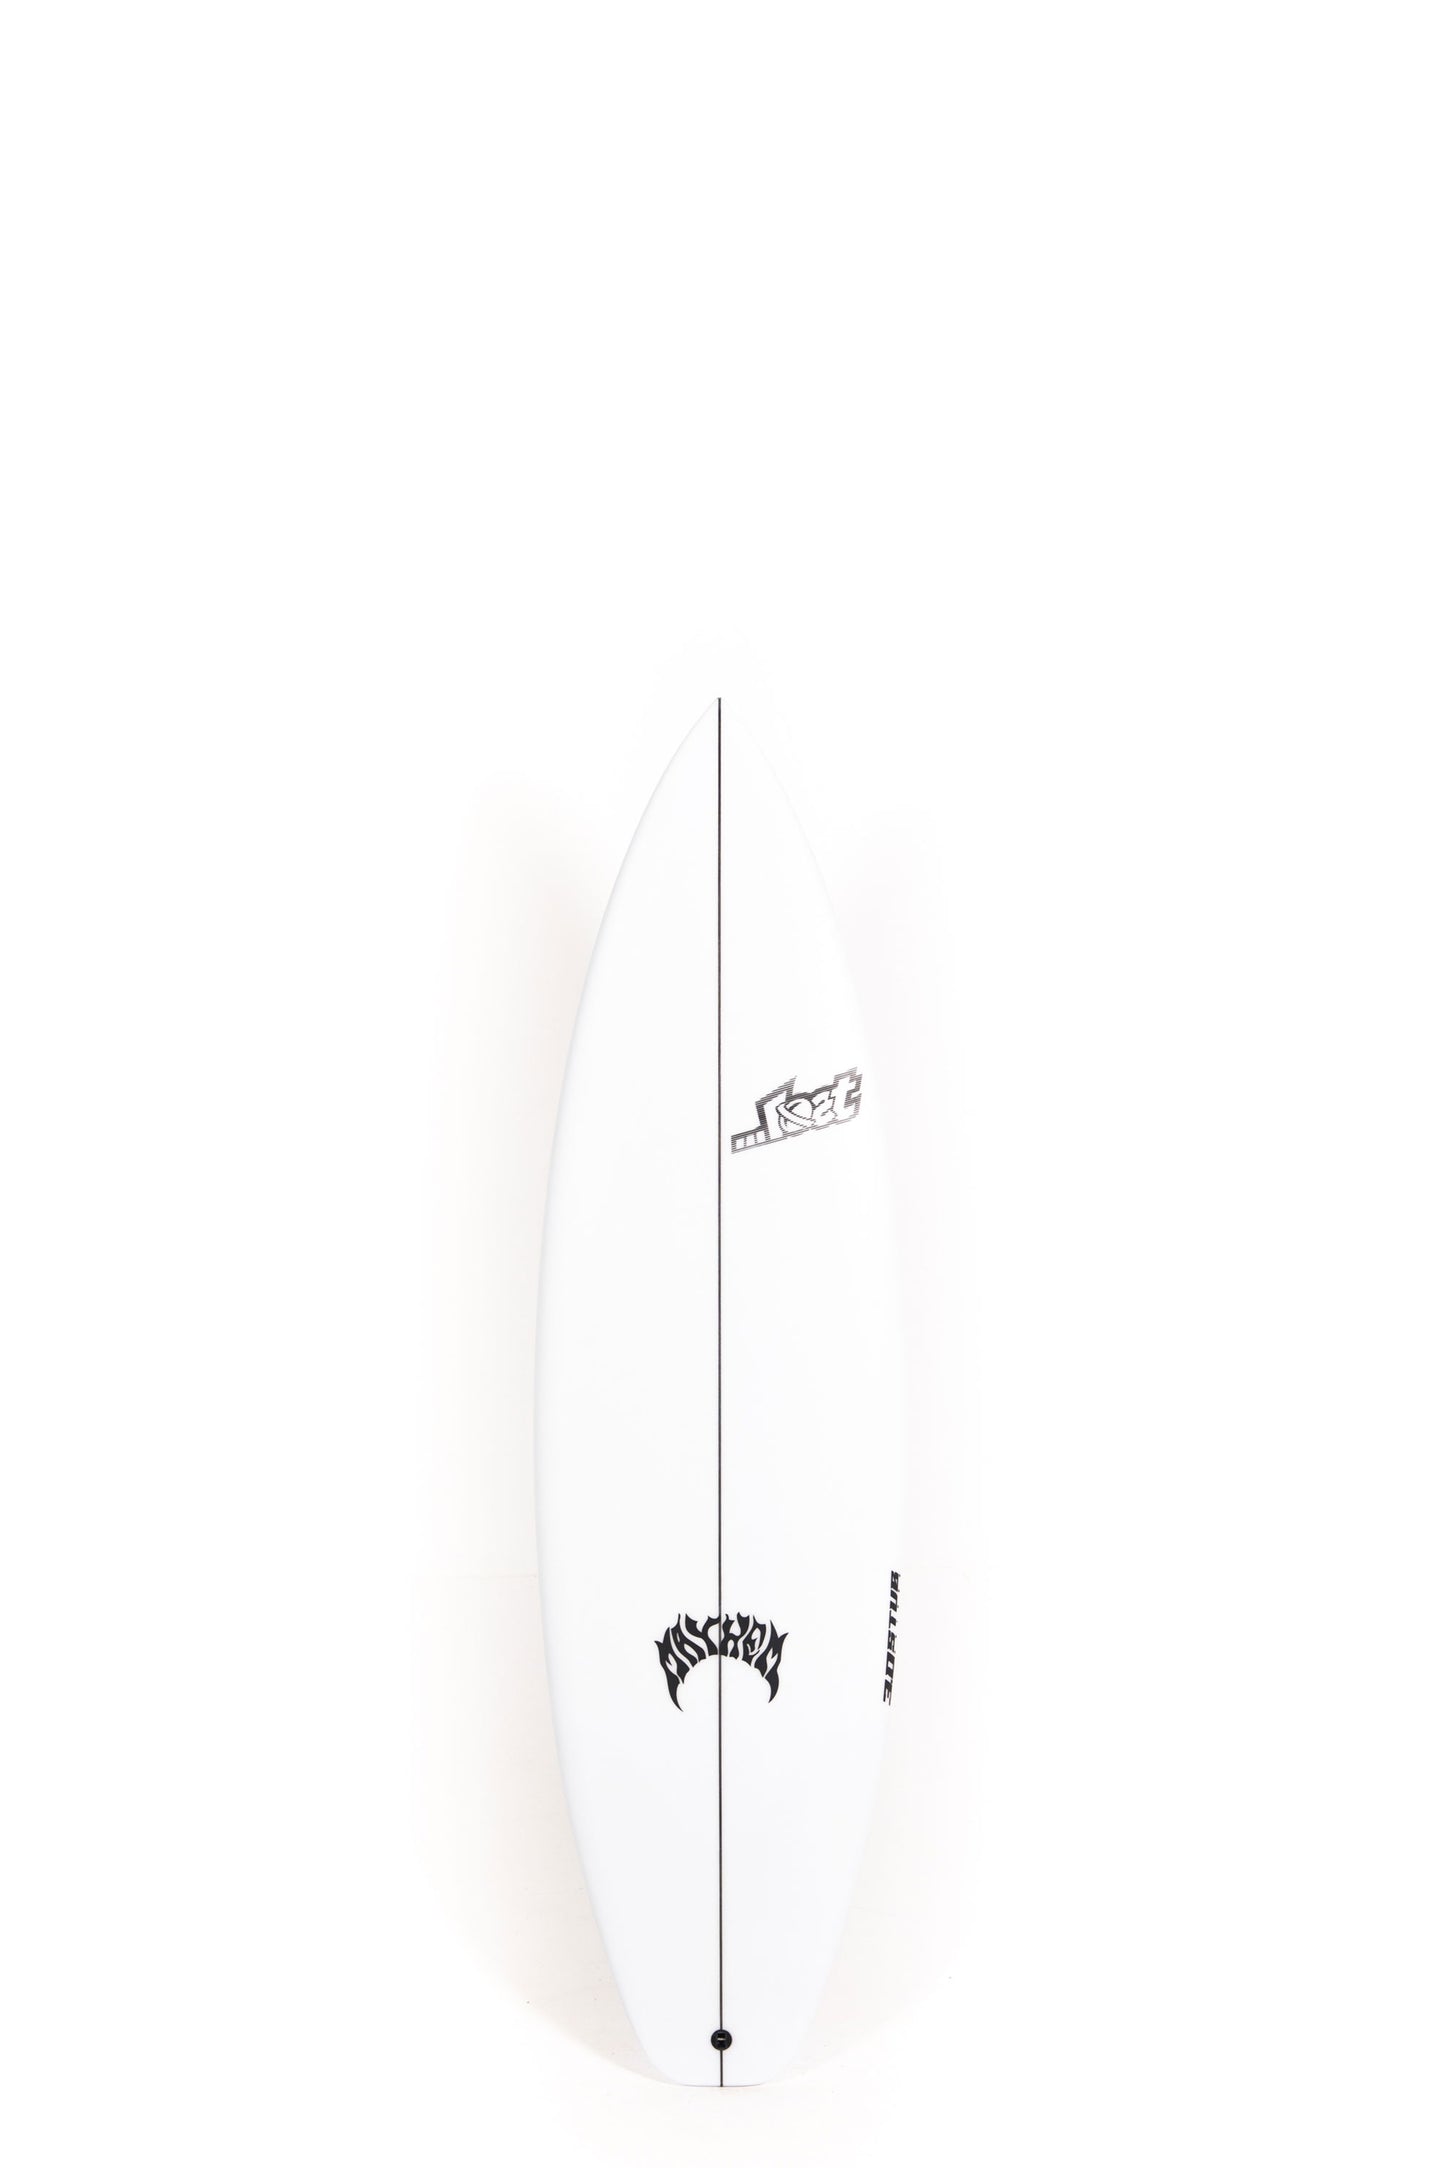 Pukas-Surf-Shop-Lost-Surfboards-3-0-stub-driver_Matt-Biolos-5_10